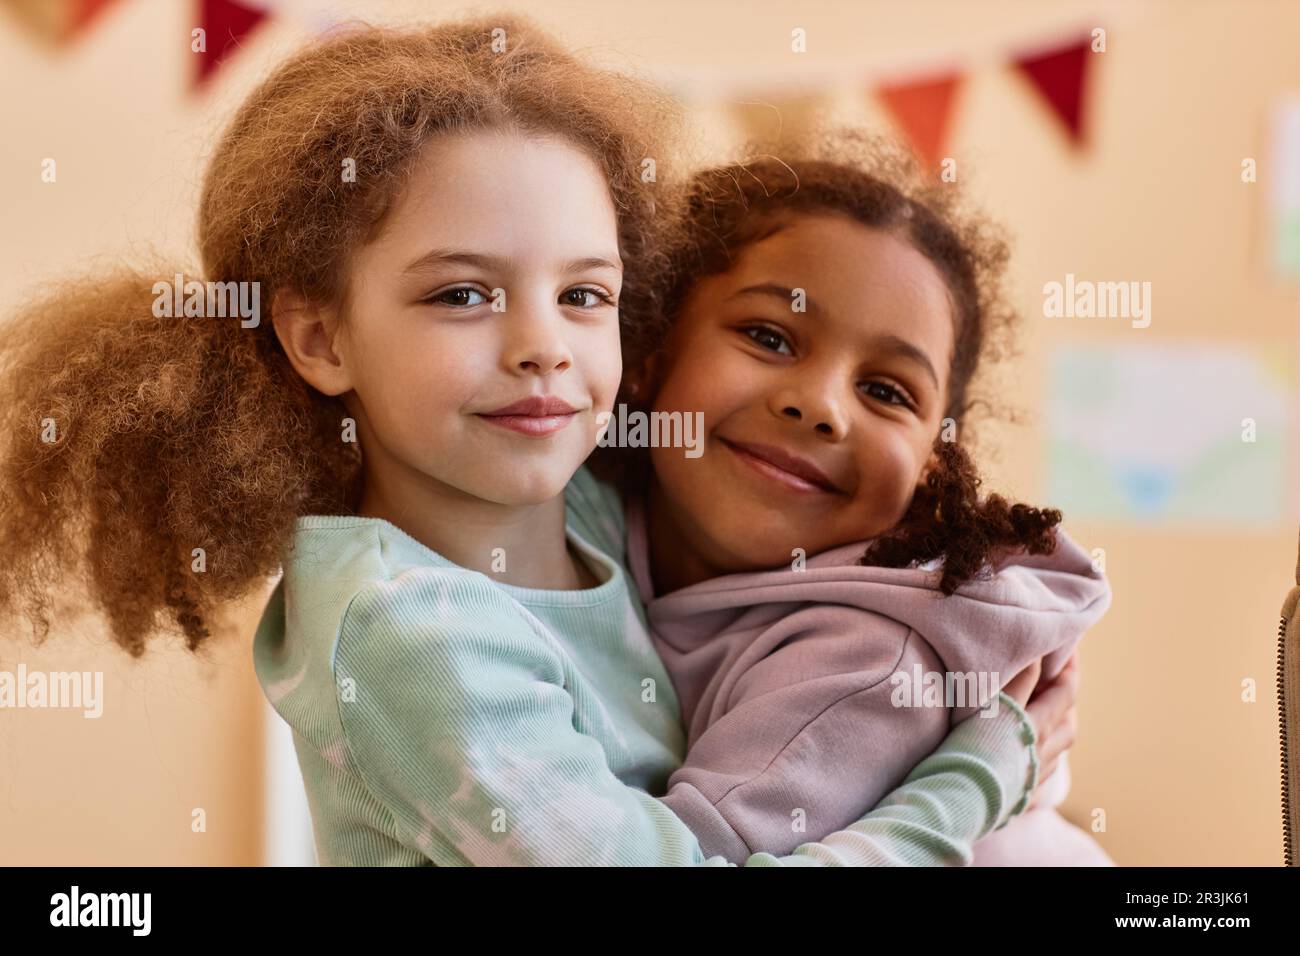 Porträt von zwei süßen kleinen Mädchen, die zu Hause umarmt und vor der Kamera lächelt Stockfoto